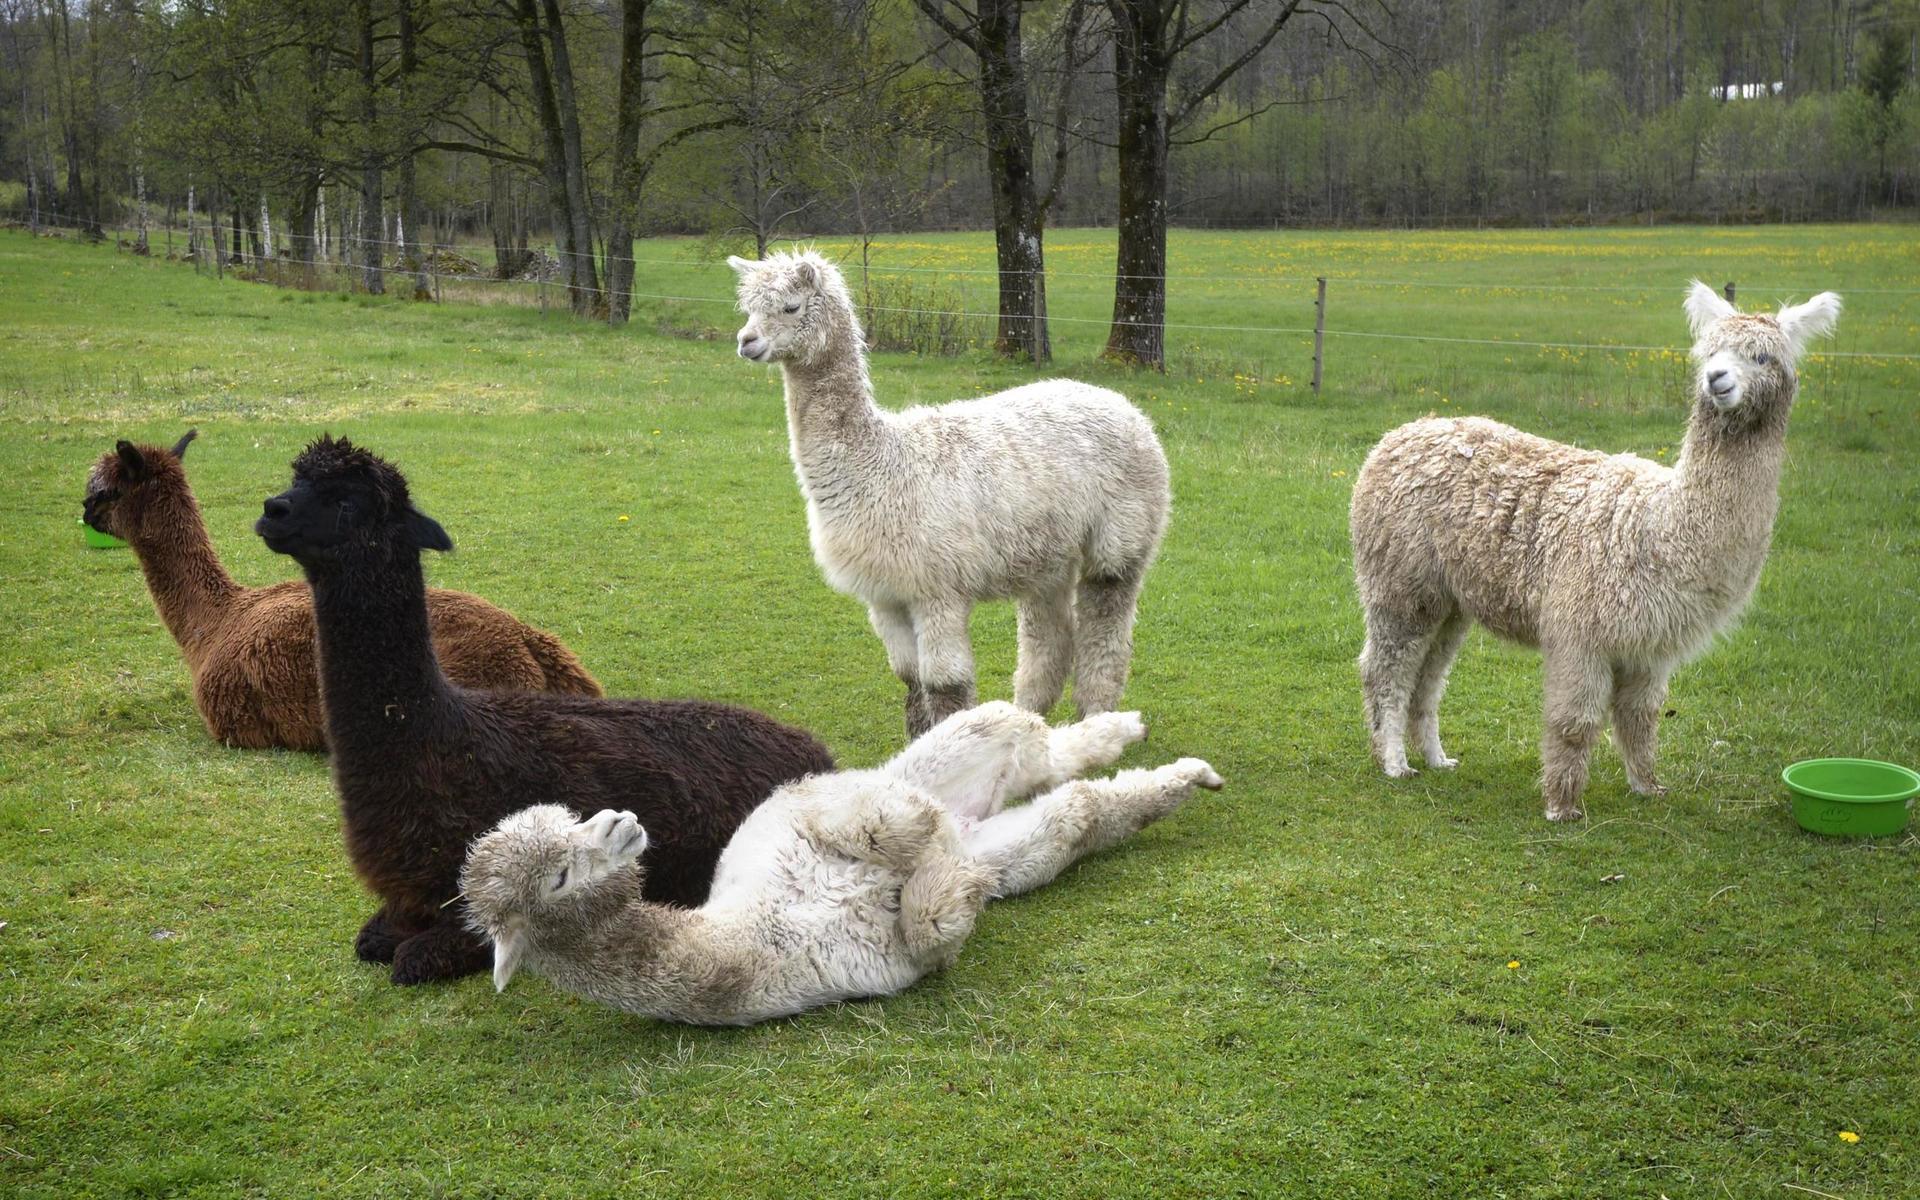 Efter yogapasset blev alpackorna mer närgångna och började strecka på sig och rulla runt. Kanske var de också sugna på att yoga?